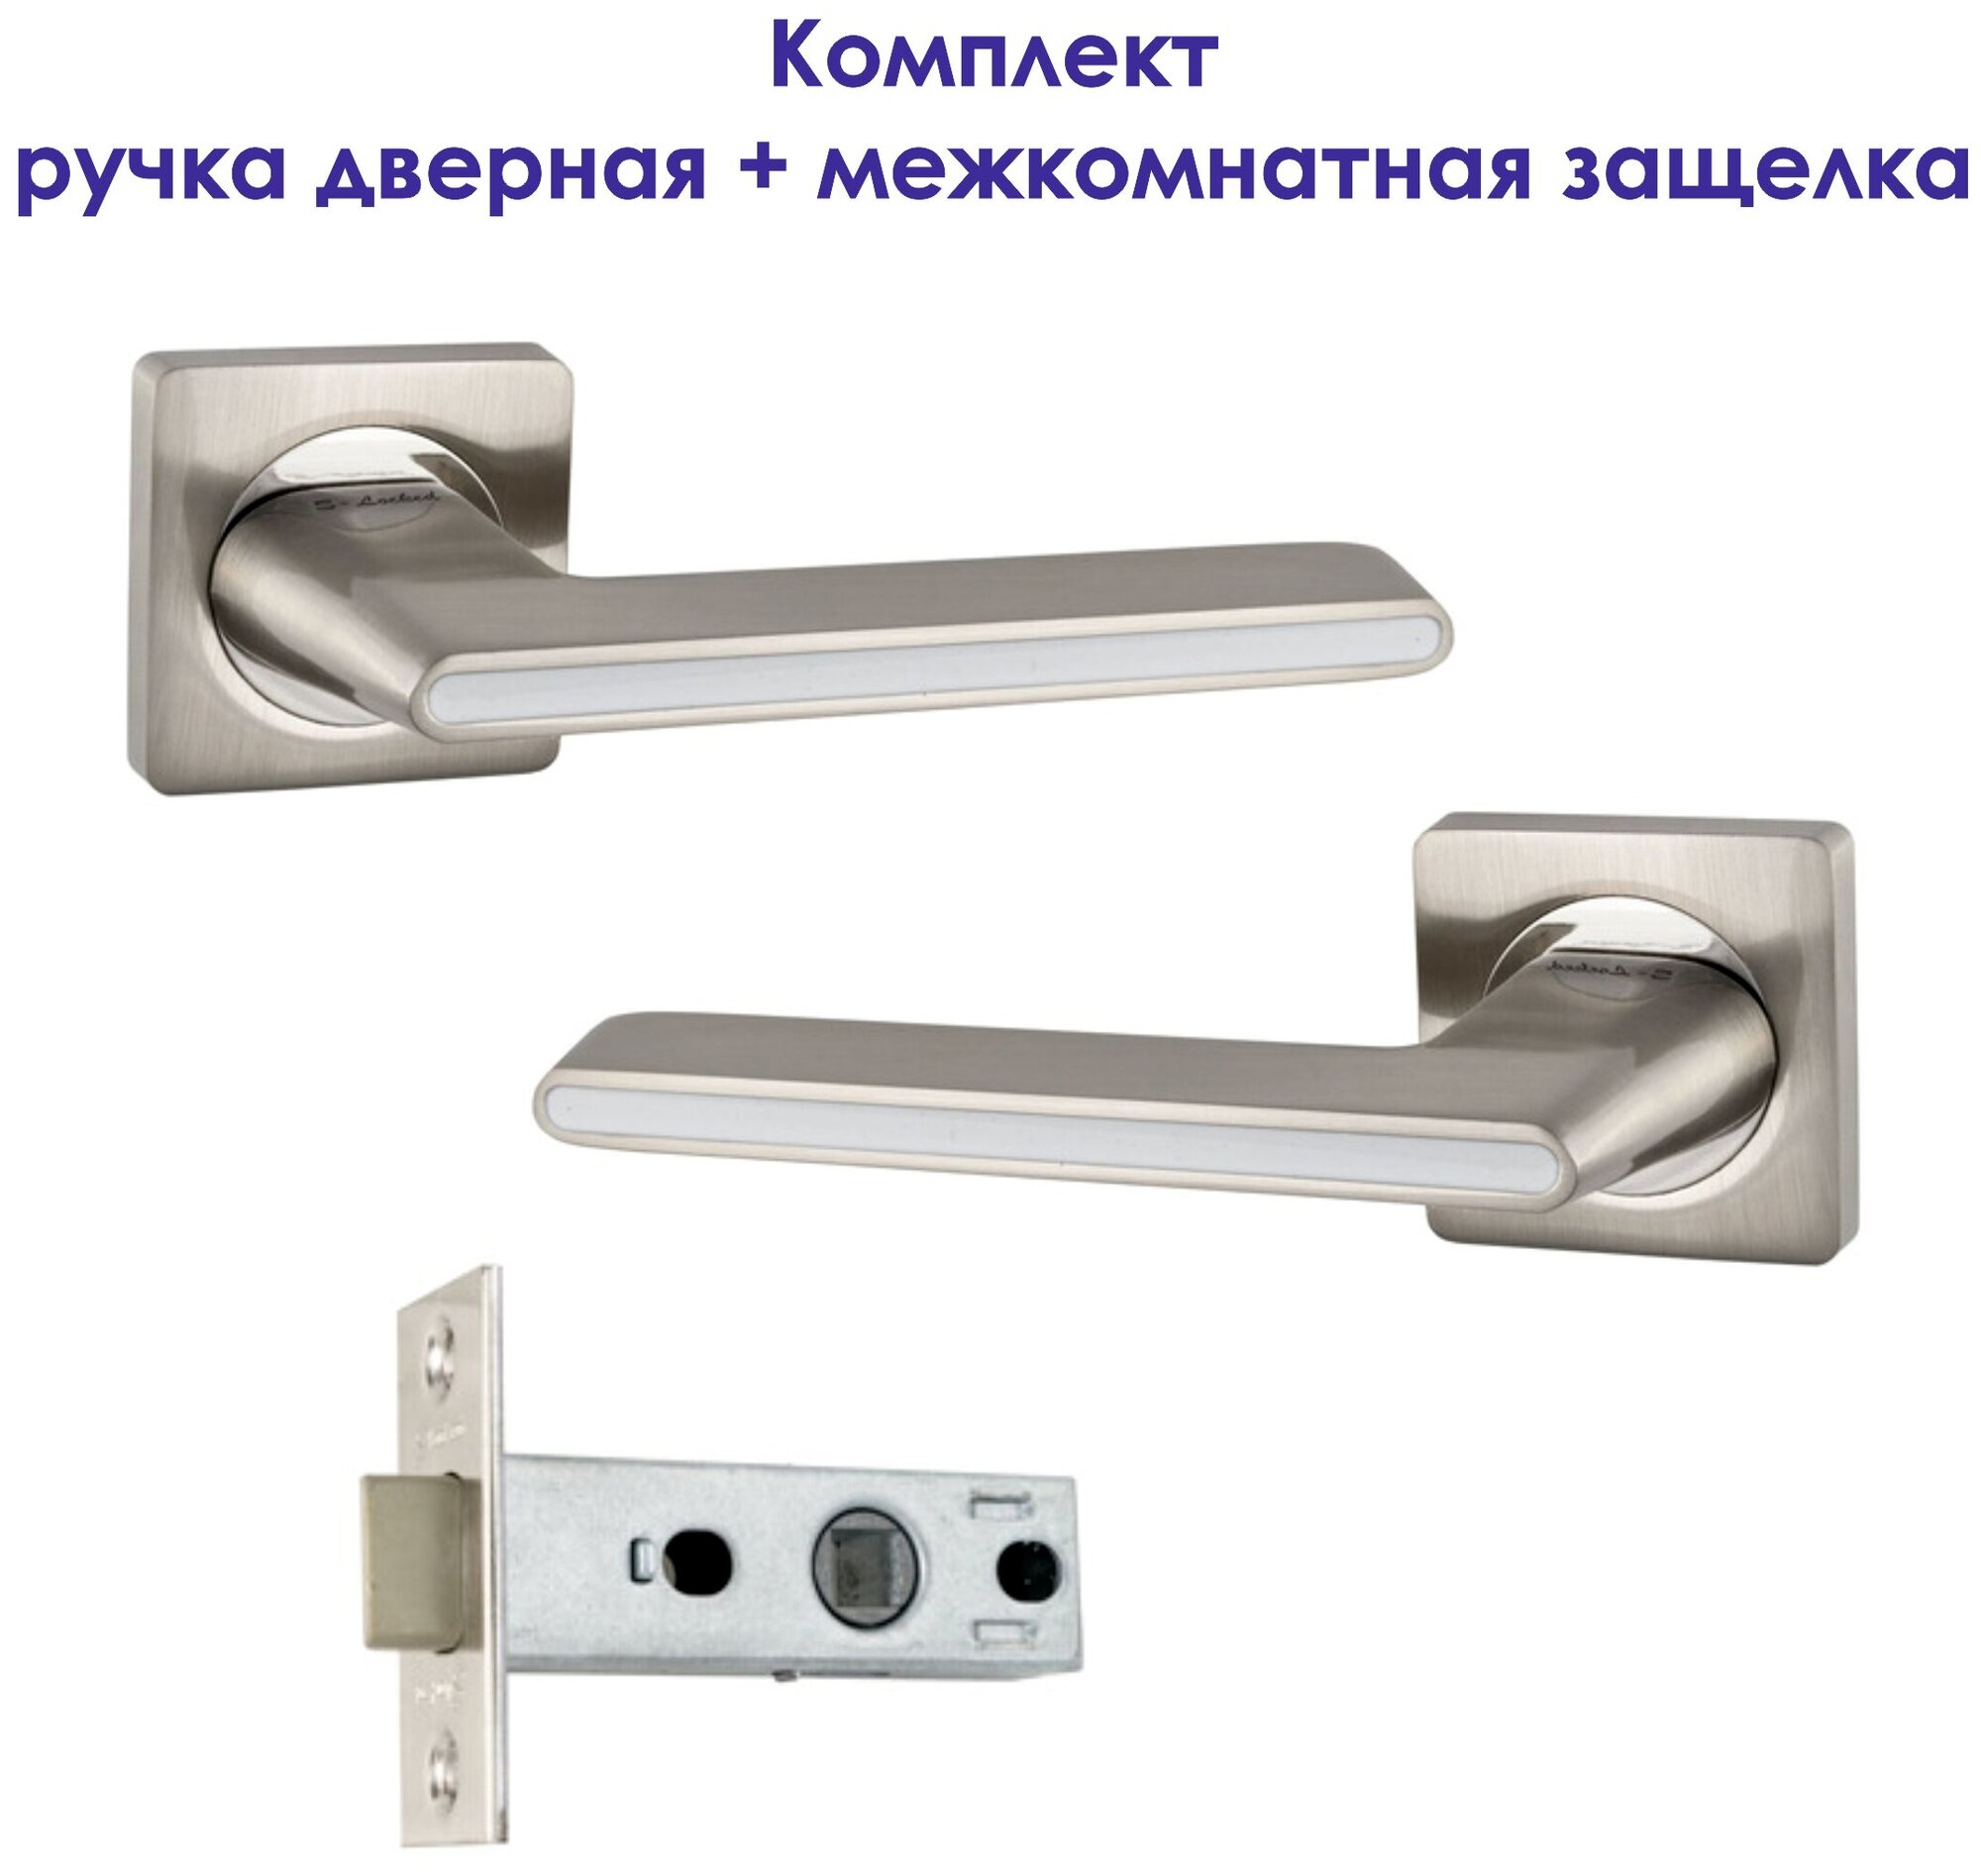 Комплект для межкомнатной двери Ручка дверная S-Locked А-180 + Защелка/ матовый никель/хром